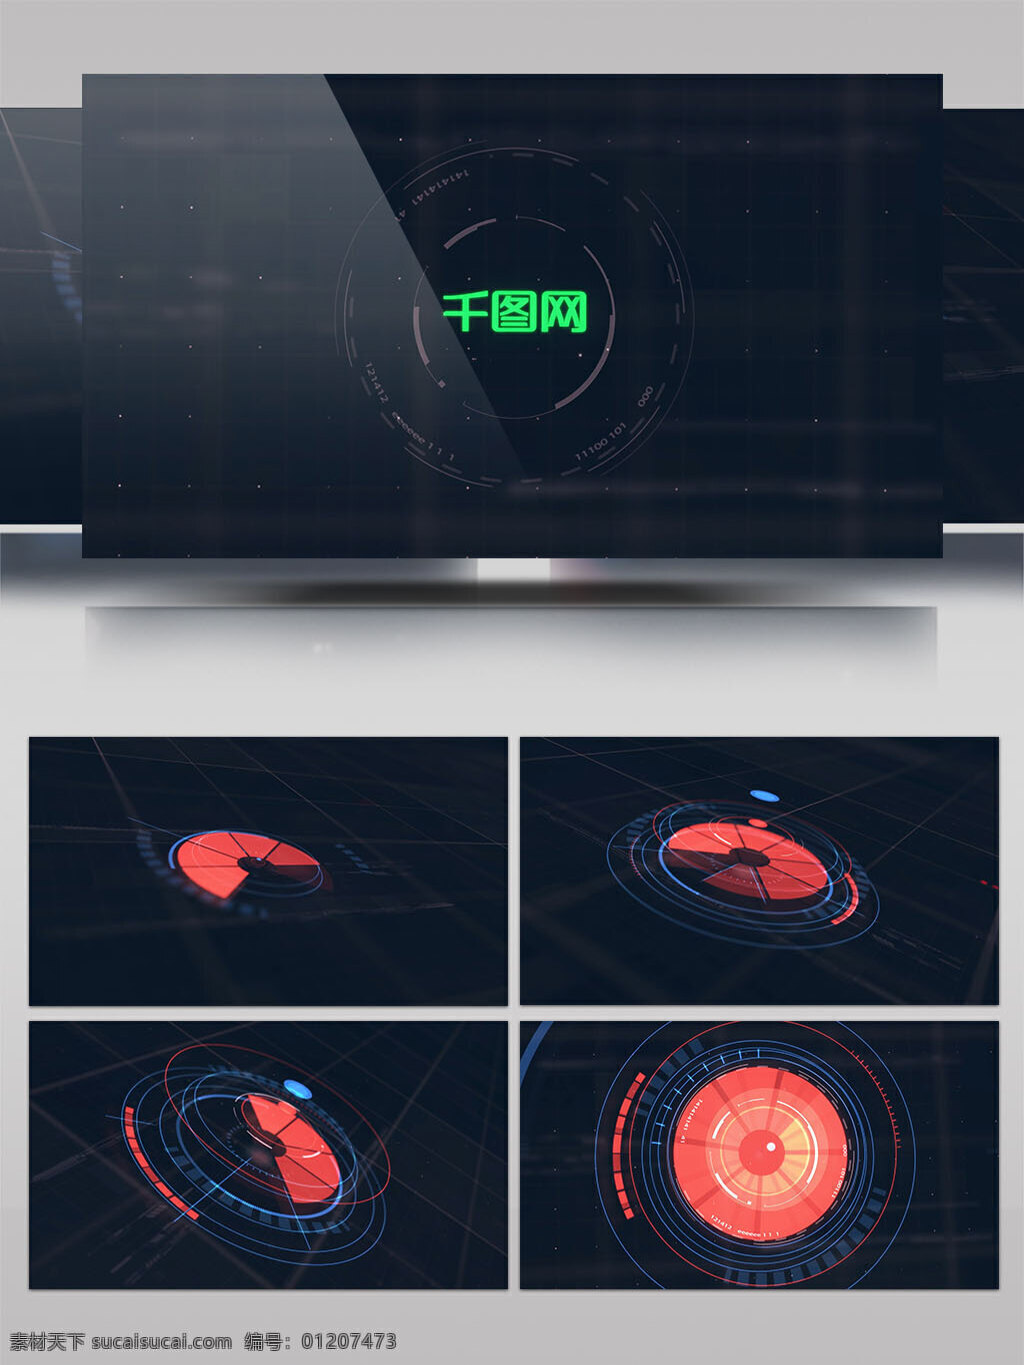 高科技 图形 动画 片头 数字 科技 大气 科技感 计算机 数据 显示 电子 全息图 全息 hud 标识 科幻 高科技感 演绎 logo 动画演绎 logo演绎 三维 空间 立体感